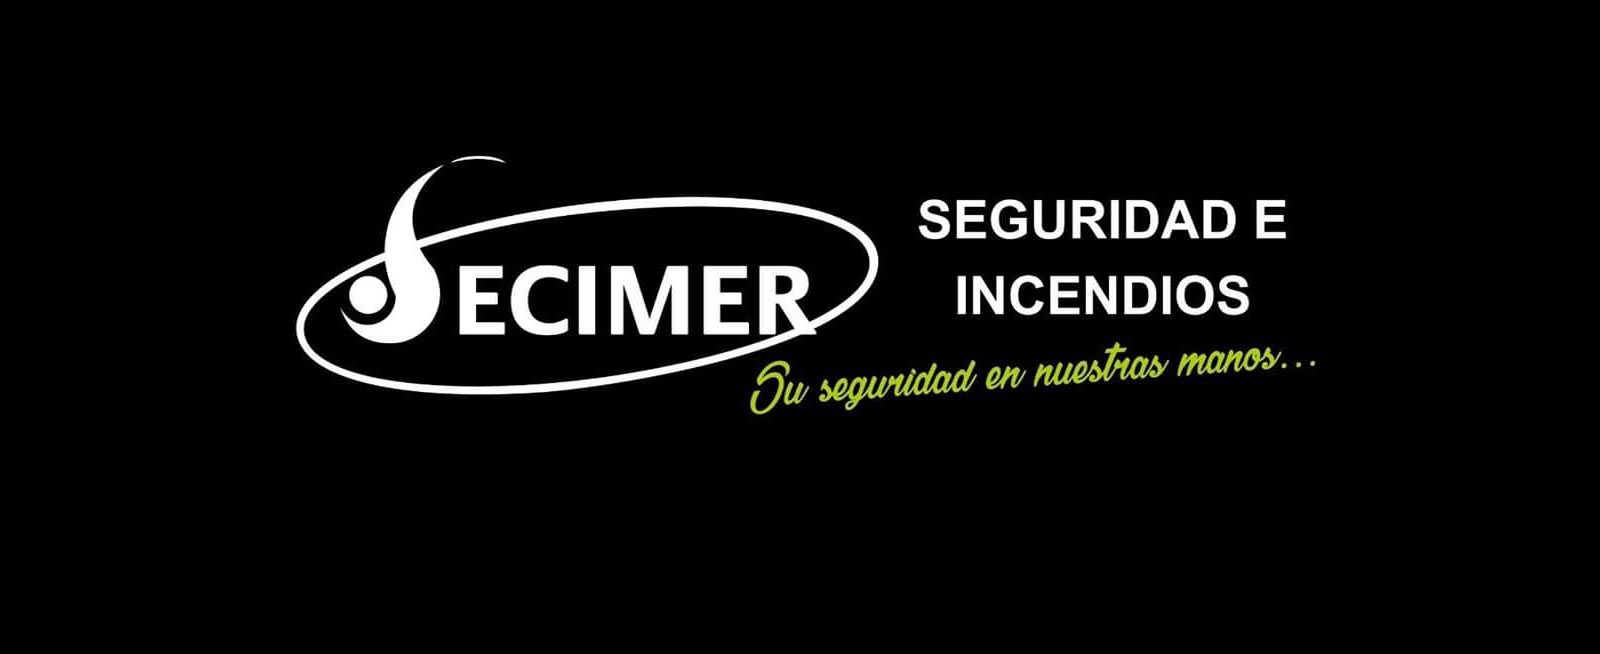 Secimer banner 4